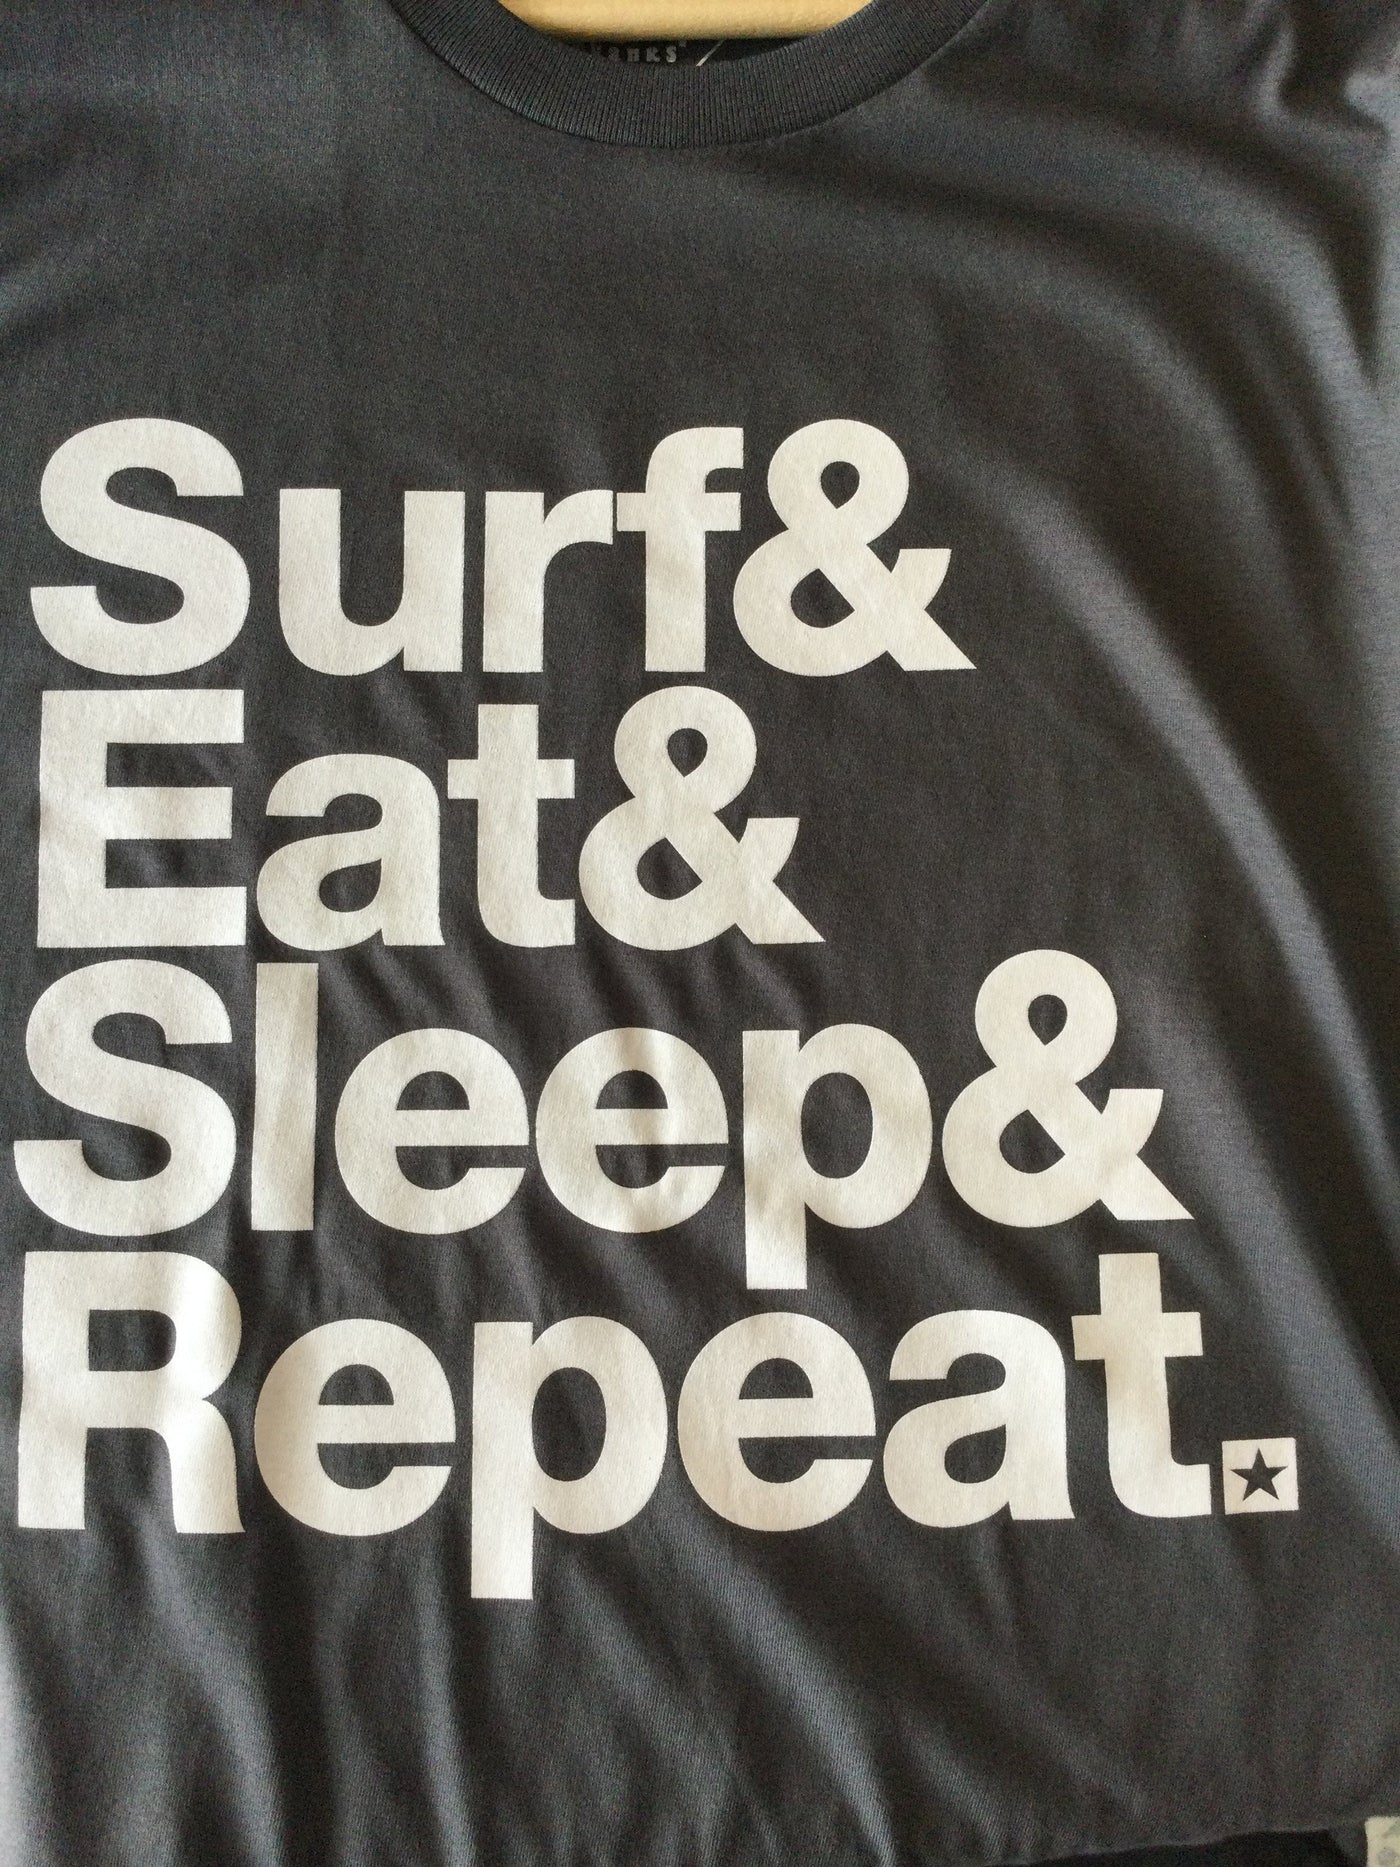 Red Star Surf - Camiseta Unisex - Surf Eat Sleep & Repeat 2.0